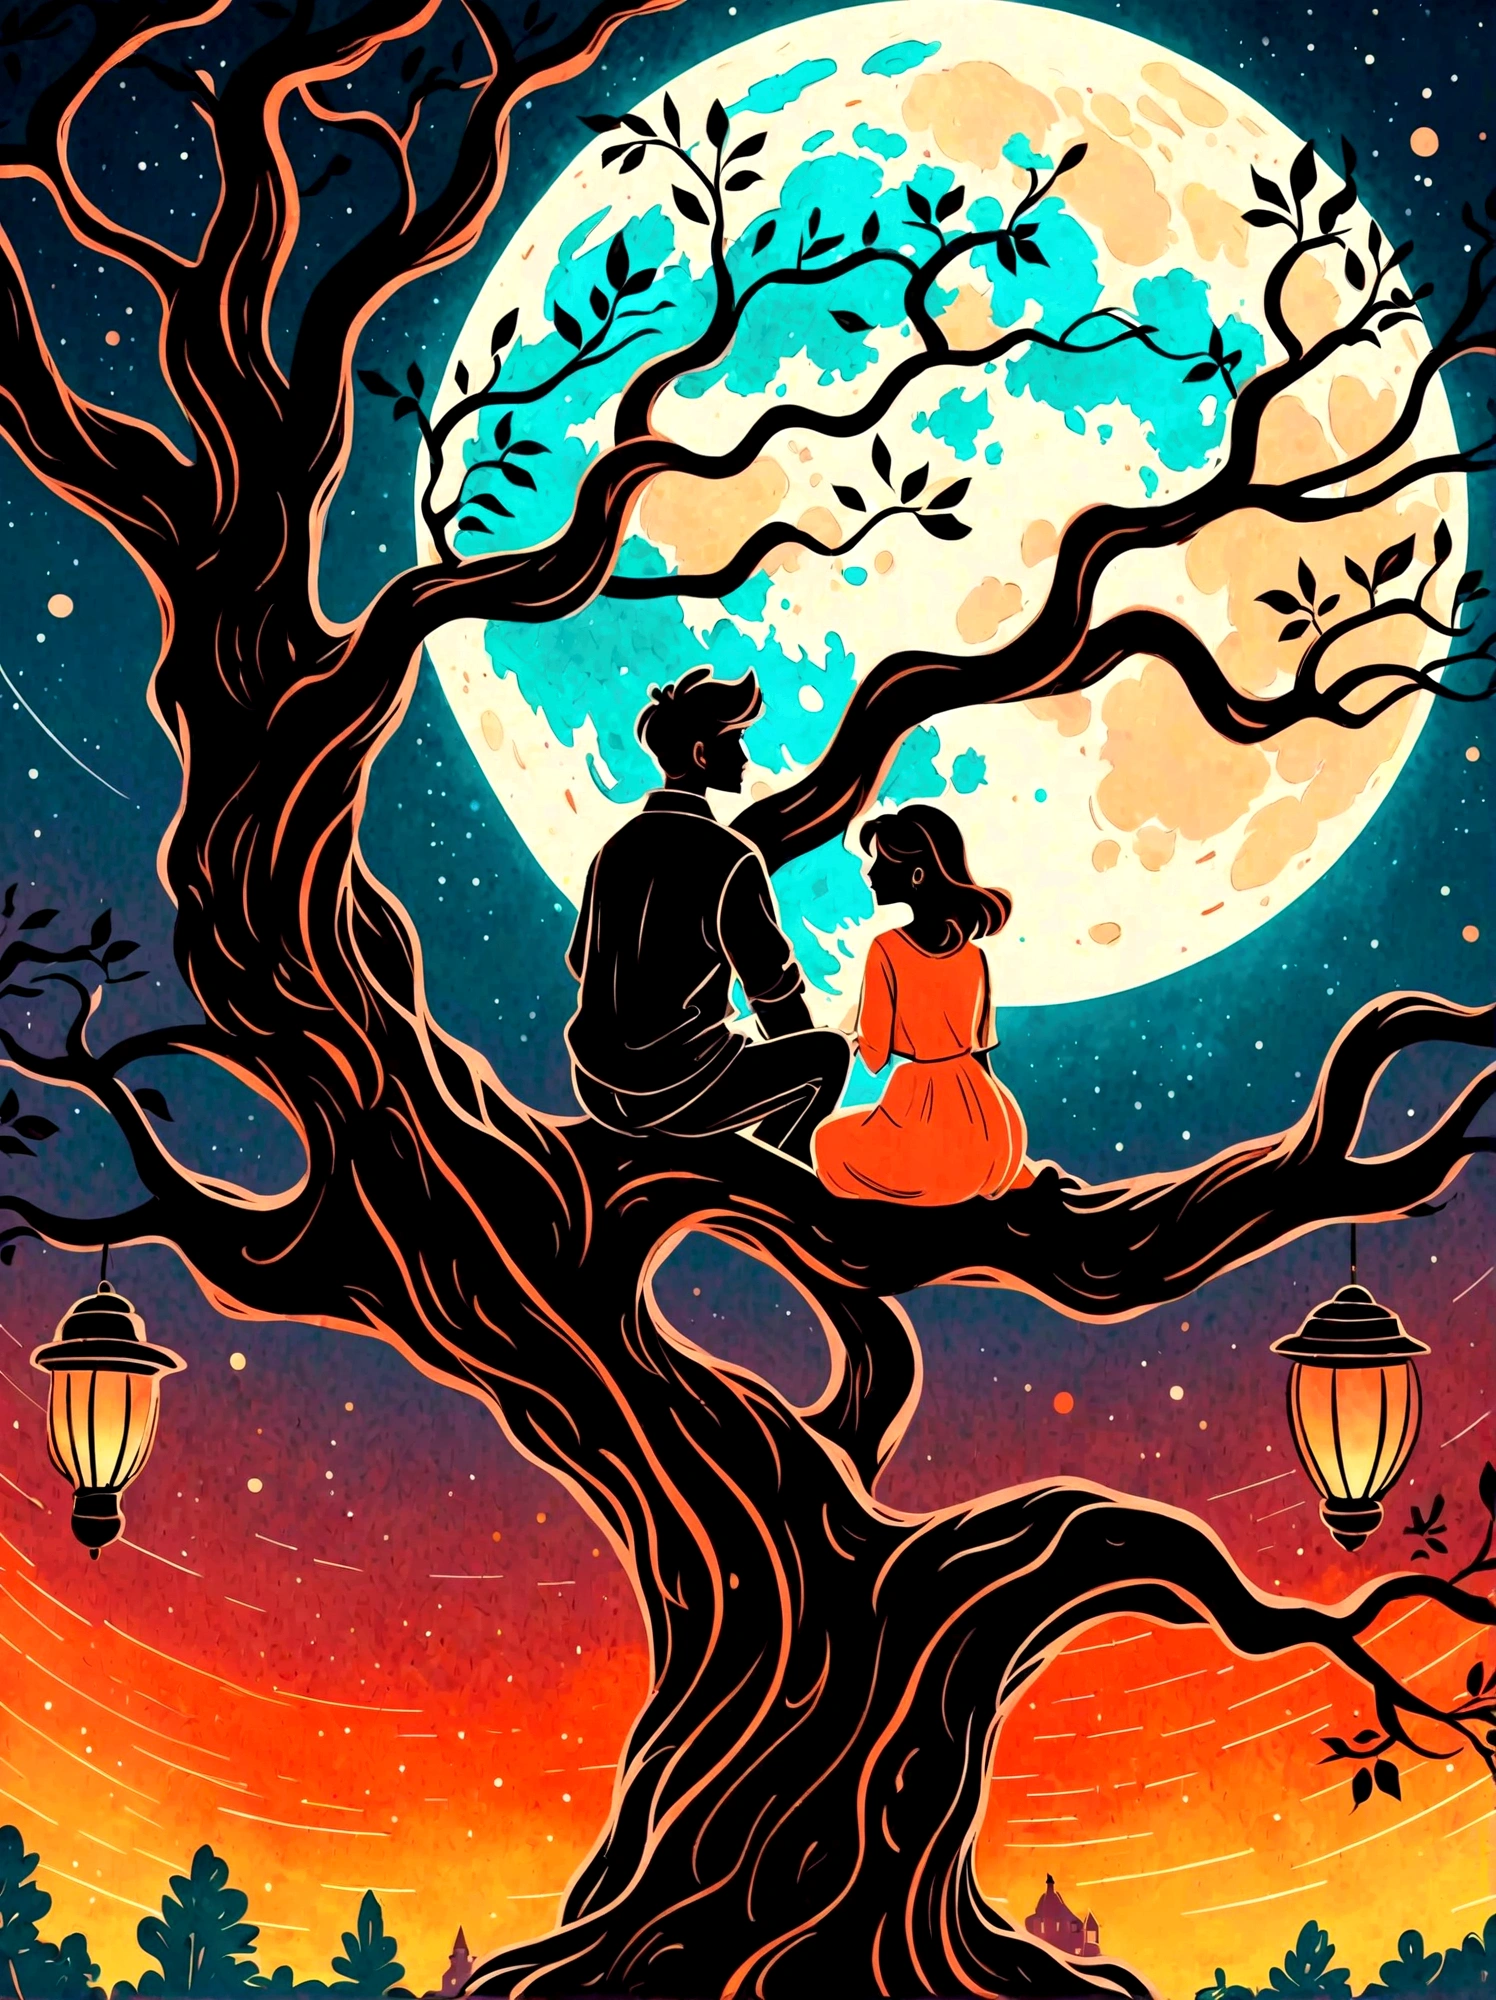 卡通手绘, 浪漫古风，夜晚，背光，一個男人和一個女人坐在樹枝上，背後有一輪滿月，亚历山大，重複，色彩清新，柔和的色彩，二極體燈，概念藝術風格，極為複雜的細節，明暗區別明顯，分層，超高品質, 神奇的天真藝術，明亮的蓝色和绿色，调色板是红色, 橙色和黑色的色调，具有粗略的风格, 背景应该有简单的手绘涂鸦图案, 1shxx1